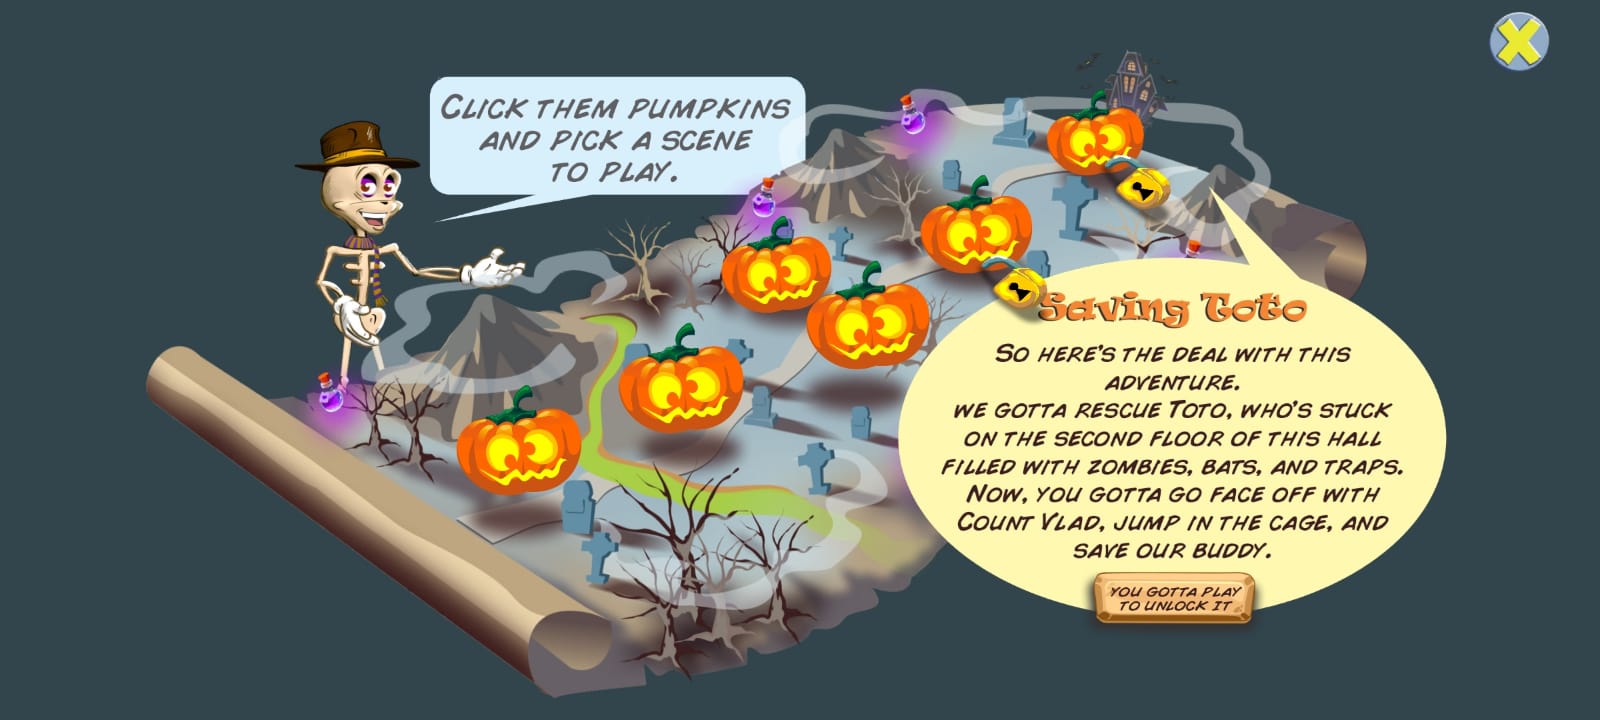 Ladda ner Pumpkins Quest på Android A.n.d.r.o.i.d. .5...0. .a.n.d. .m.o.r.e gratis.